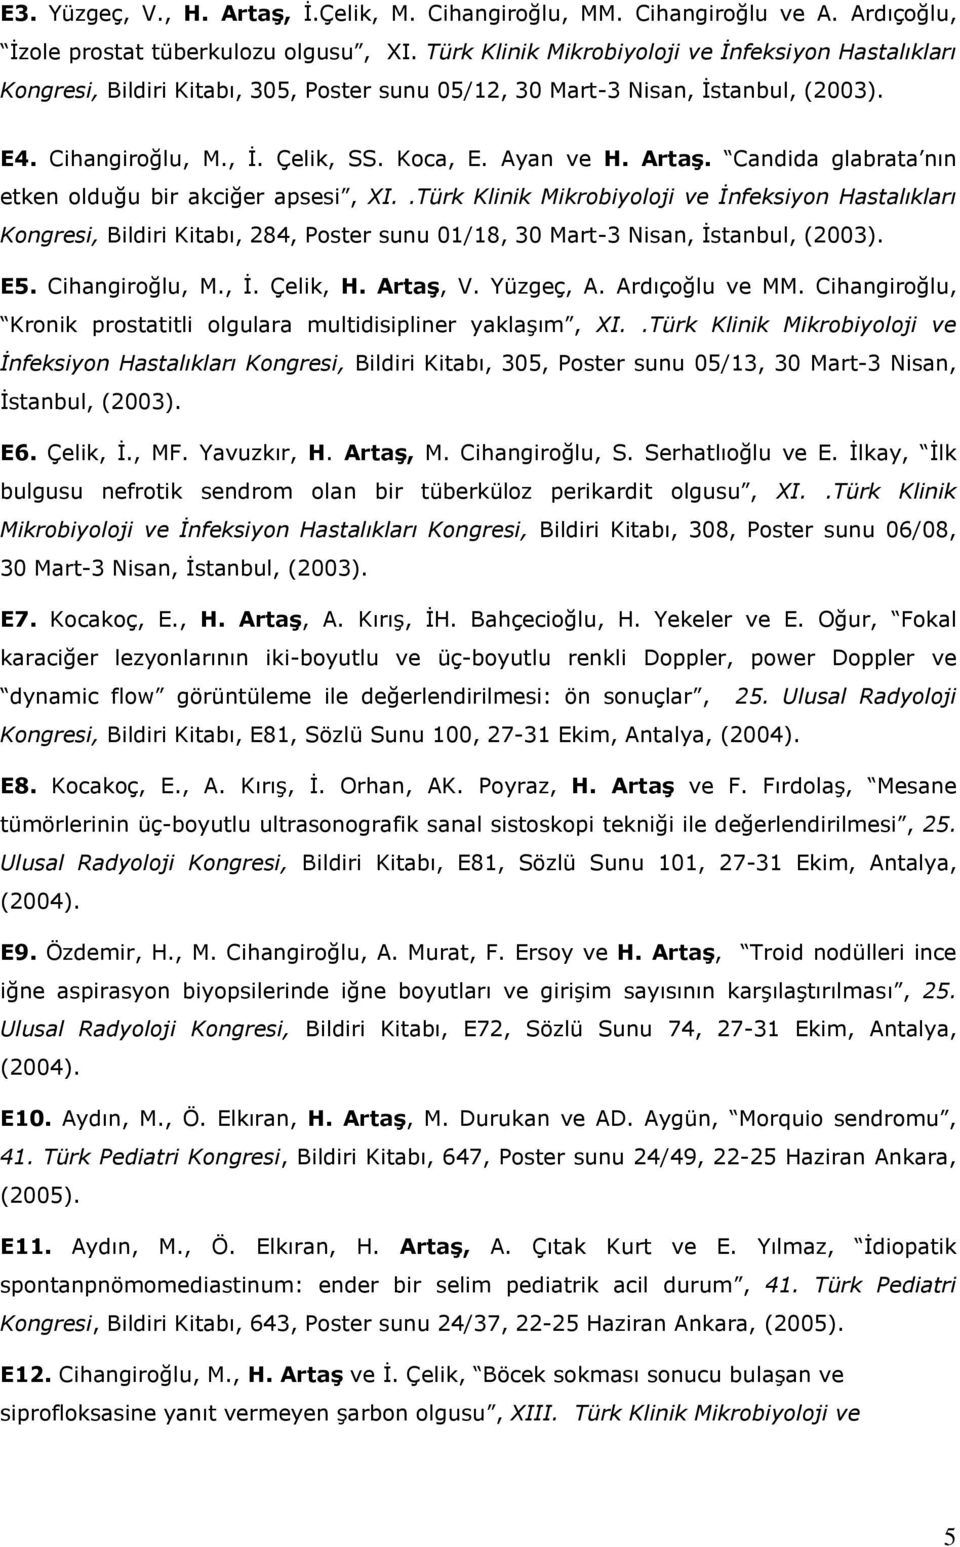 Candida glabrata nın etken olduğu bir akciğer apsesi, XI..Türk Klinik Mikrobiyoloji ve İnfeksiyon Hastalıkları Kongresi, Bildiri Kitabı, 284, Poster sunu 01/18, 30 Mart-3 Nisan, İstanbul, (2003). E5.